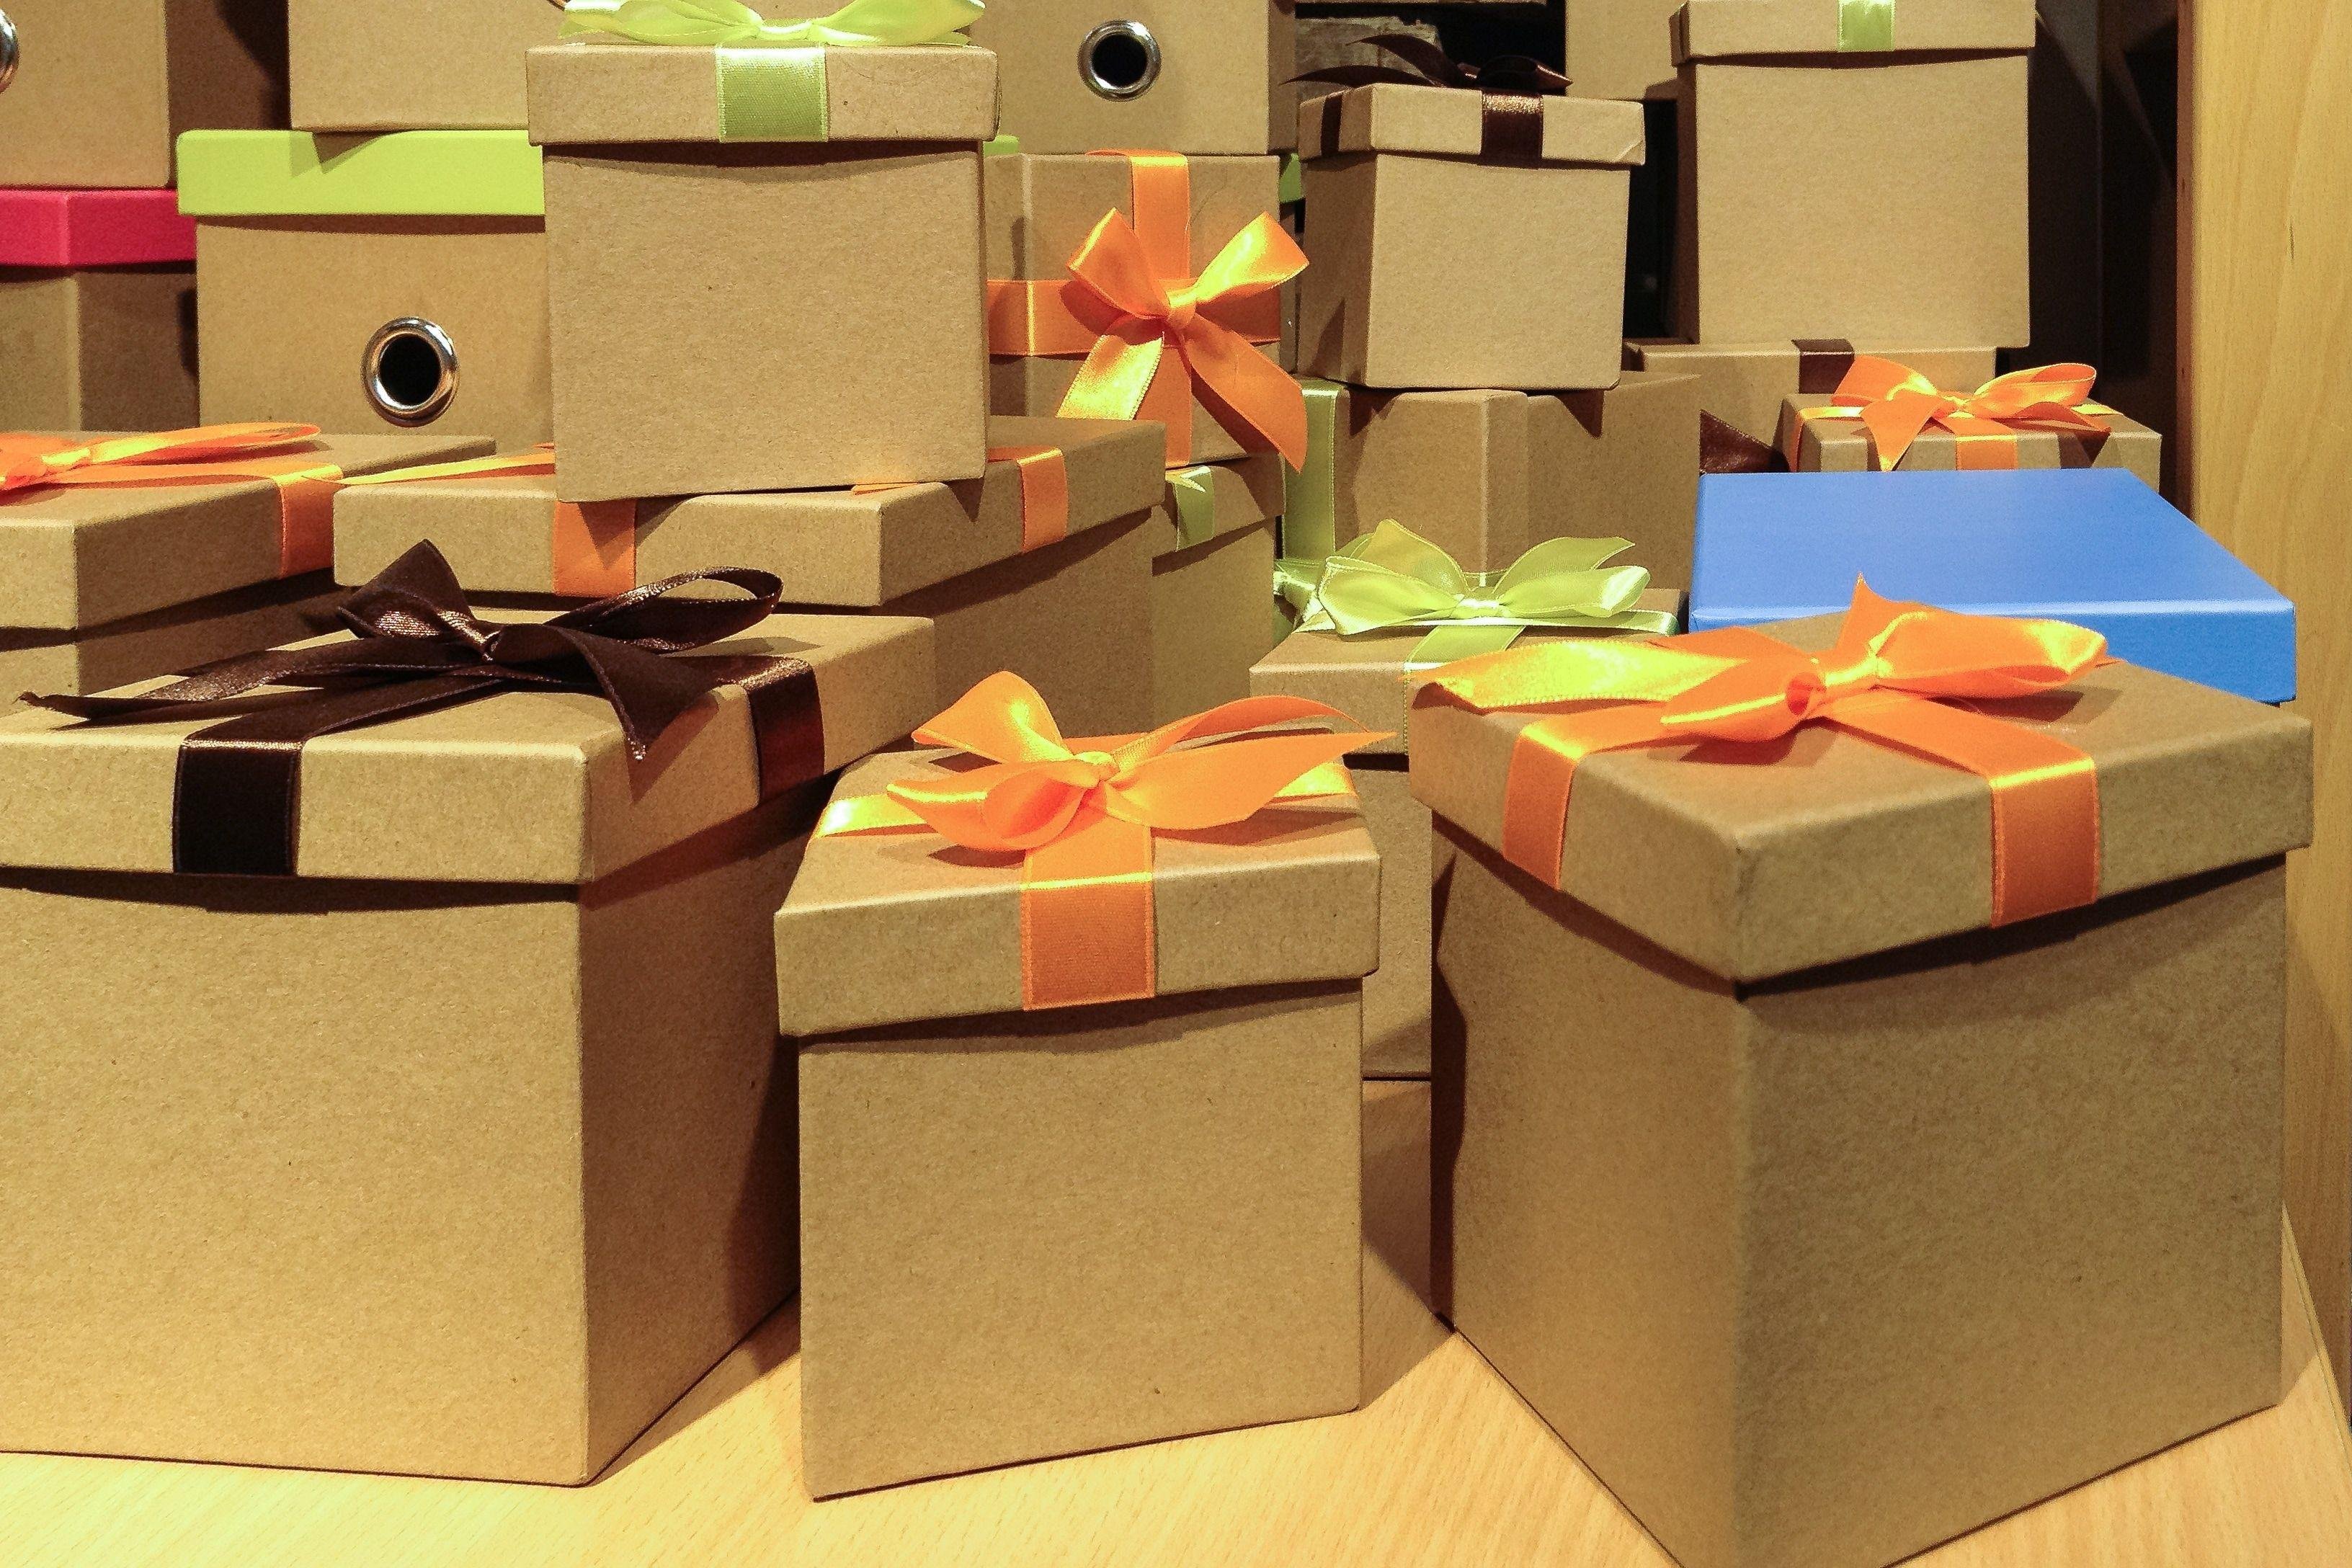 Аккуратно упакованы. Подарки и упаковка. Подарок в коробке. Большая коробка для подарка. Огромная коробка для подарка.